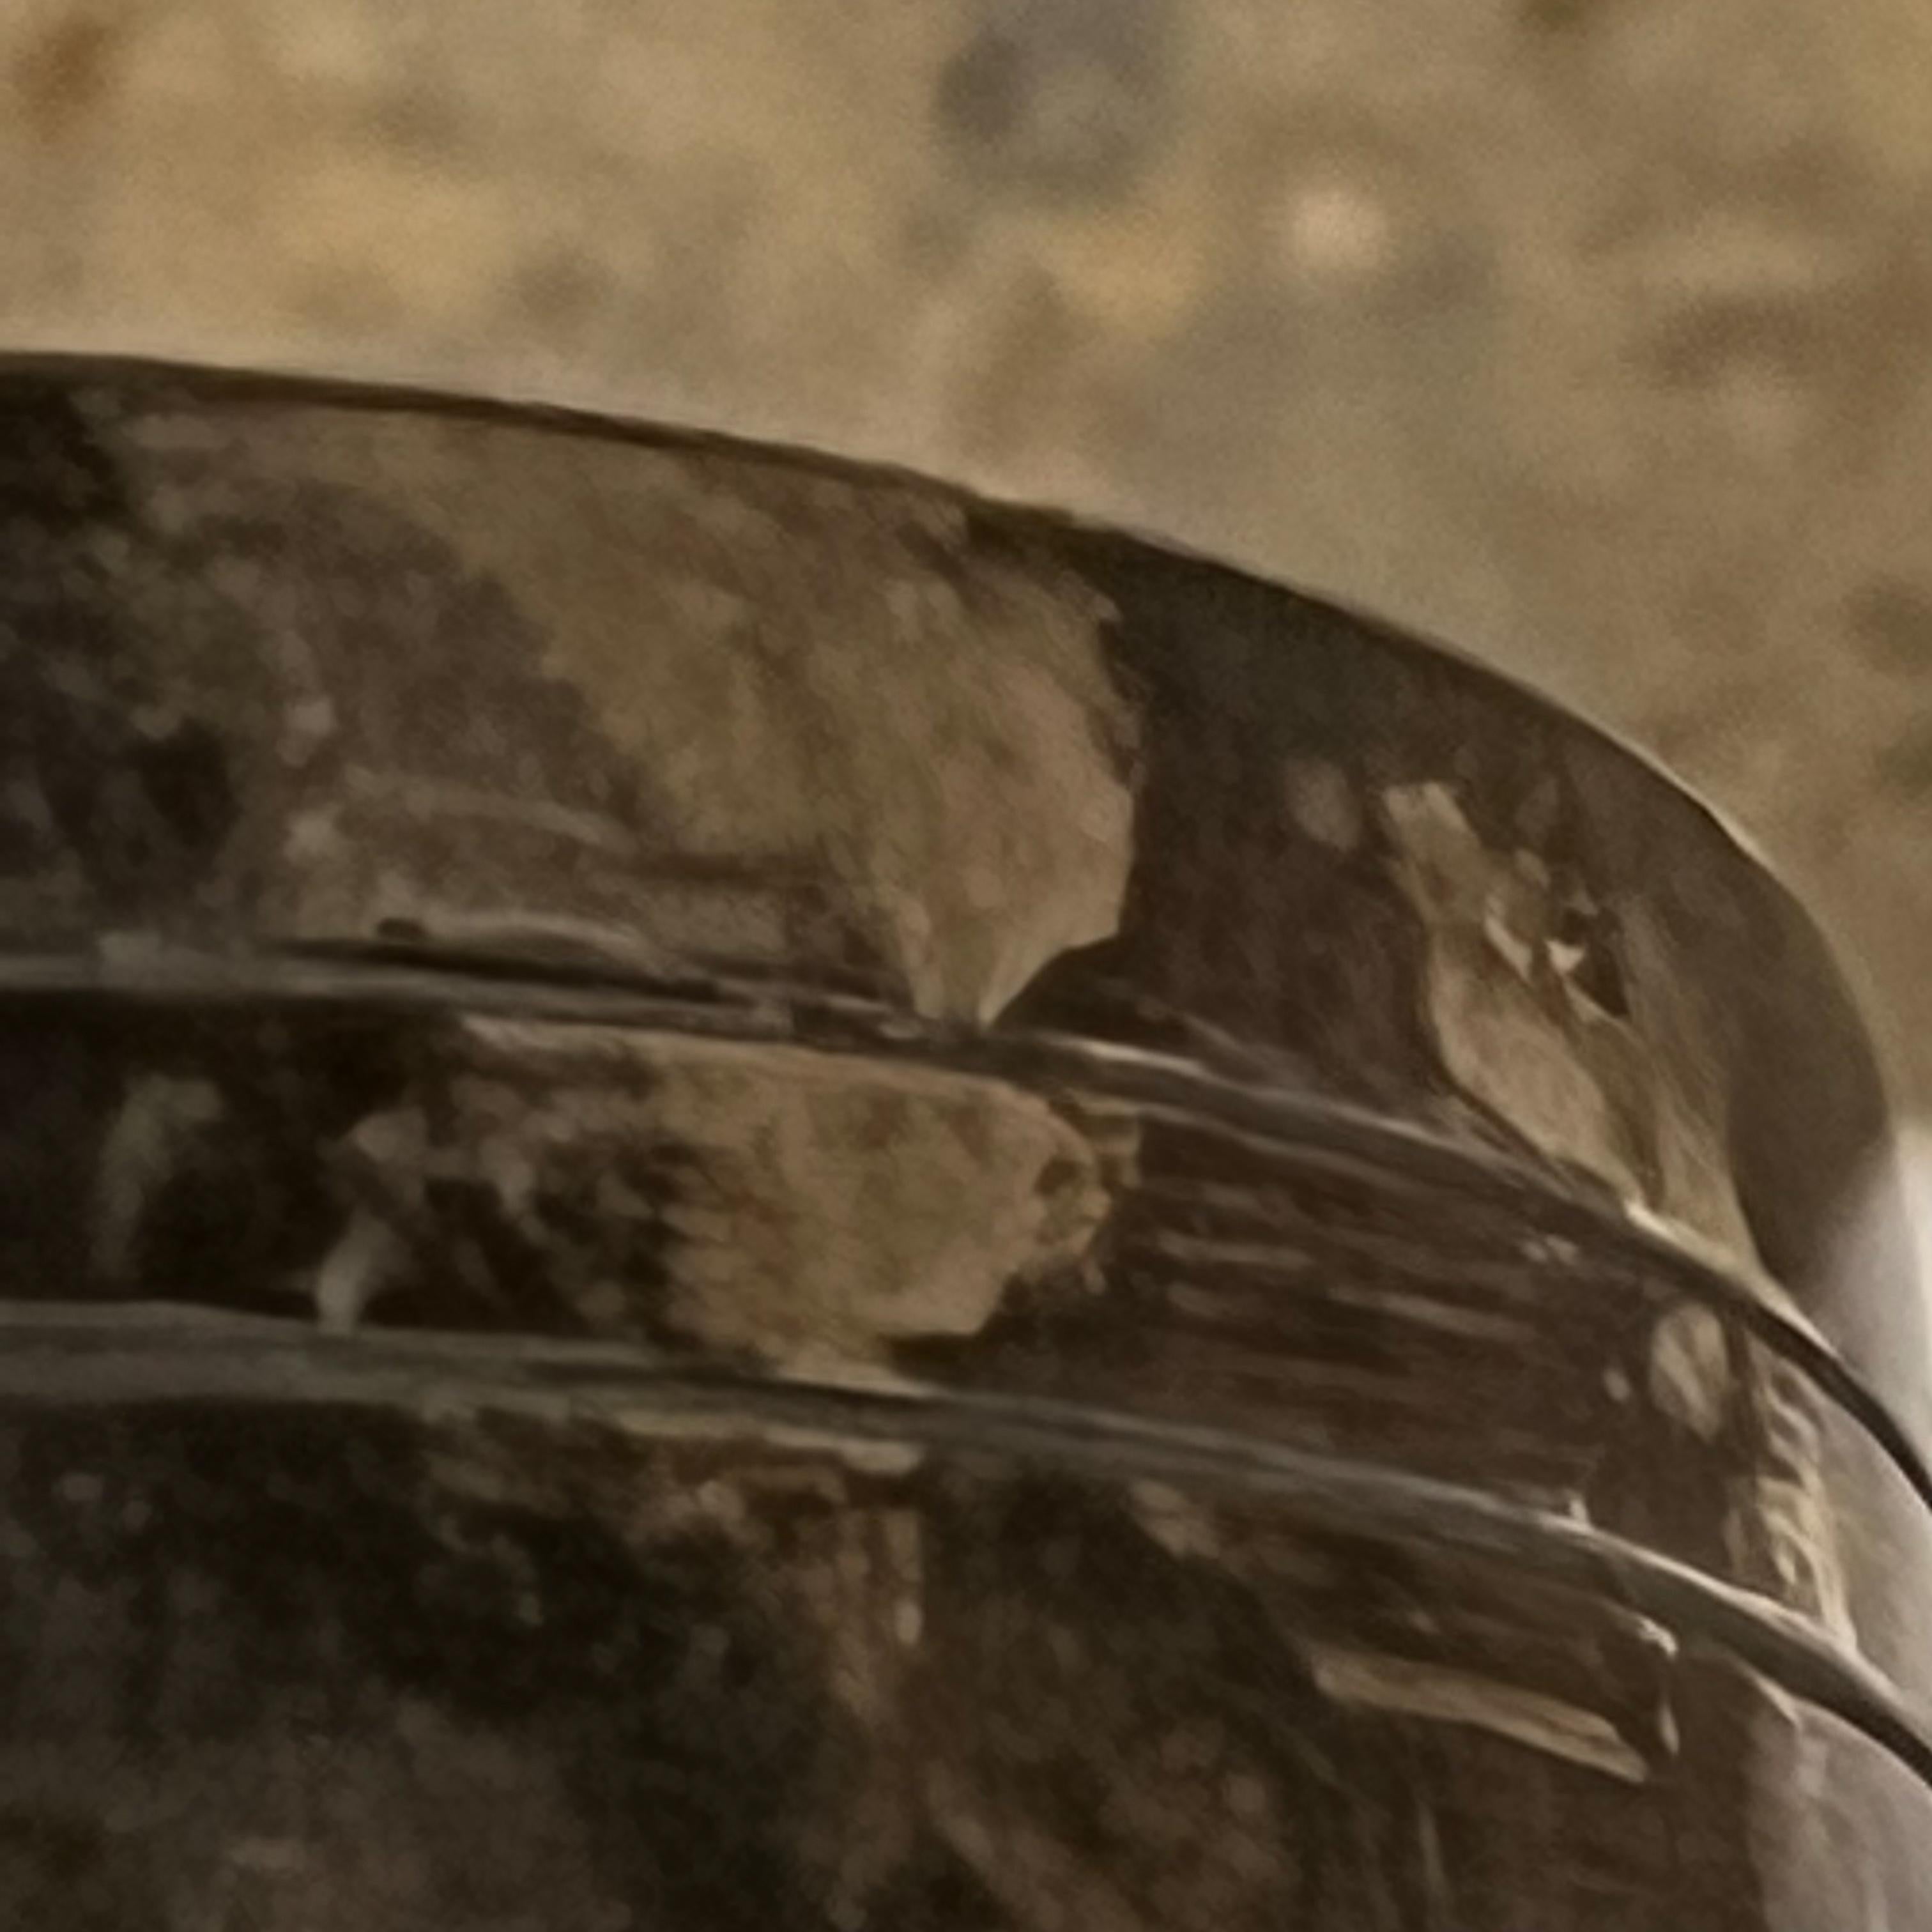 Plaque décorative
Vieux chevaliers medievaux plat plat en metal cendrier FIA Lyon France
Acier inoxydable
Estampillé par le fabricant
Mesures : 1.13 x 5,13 de diamètre
État vintage d'origine non restauré.
Voir les images fournies.
   